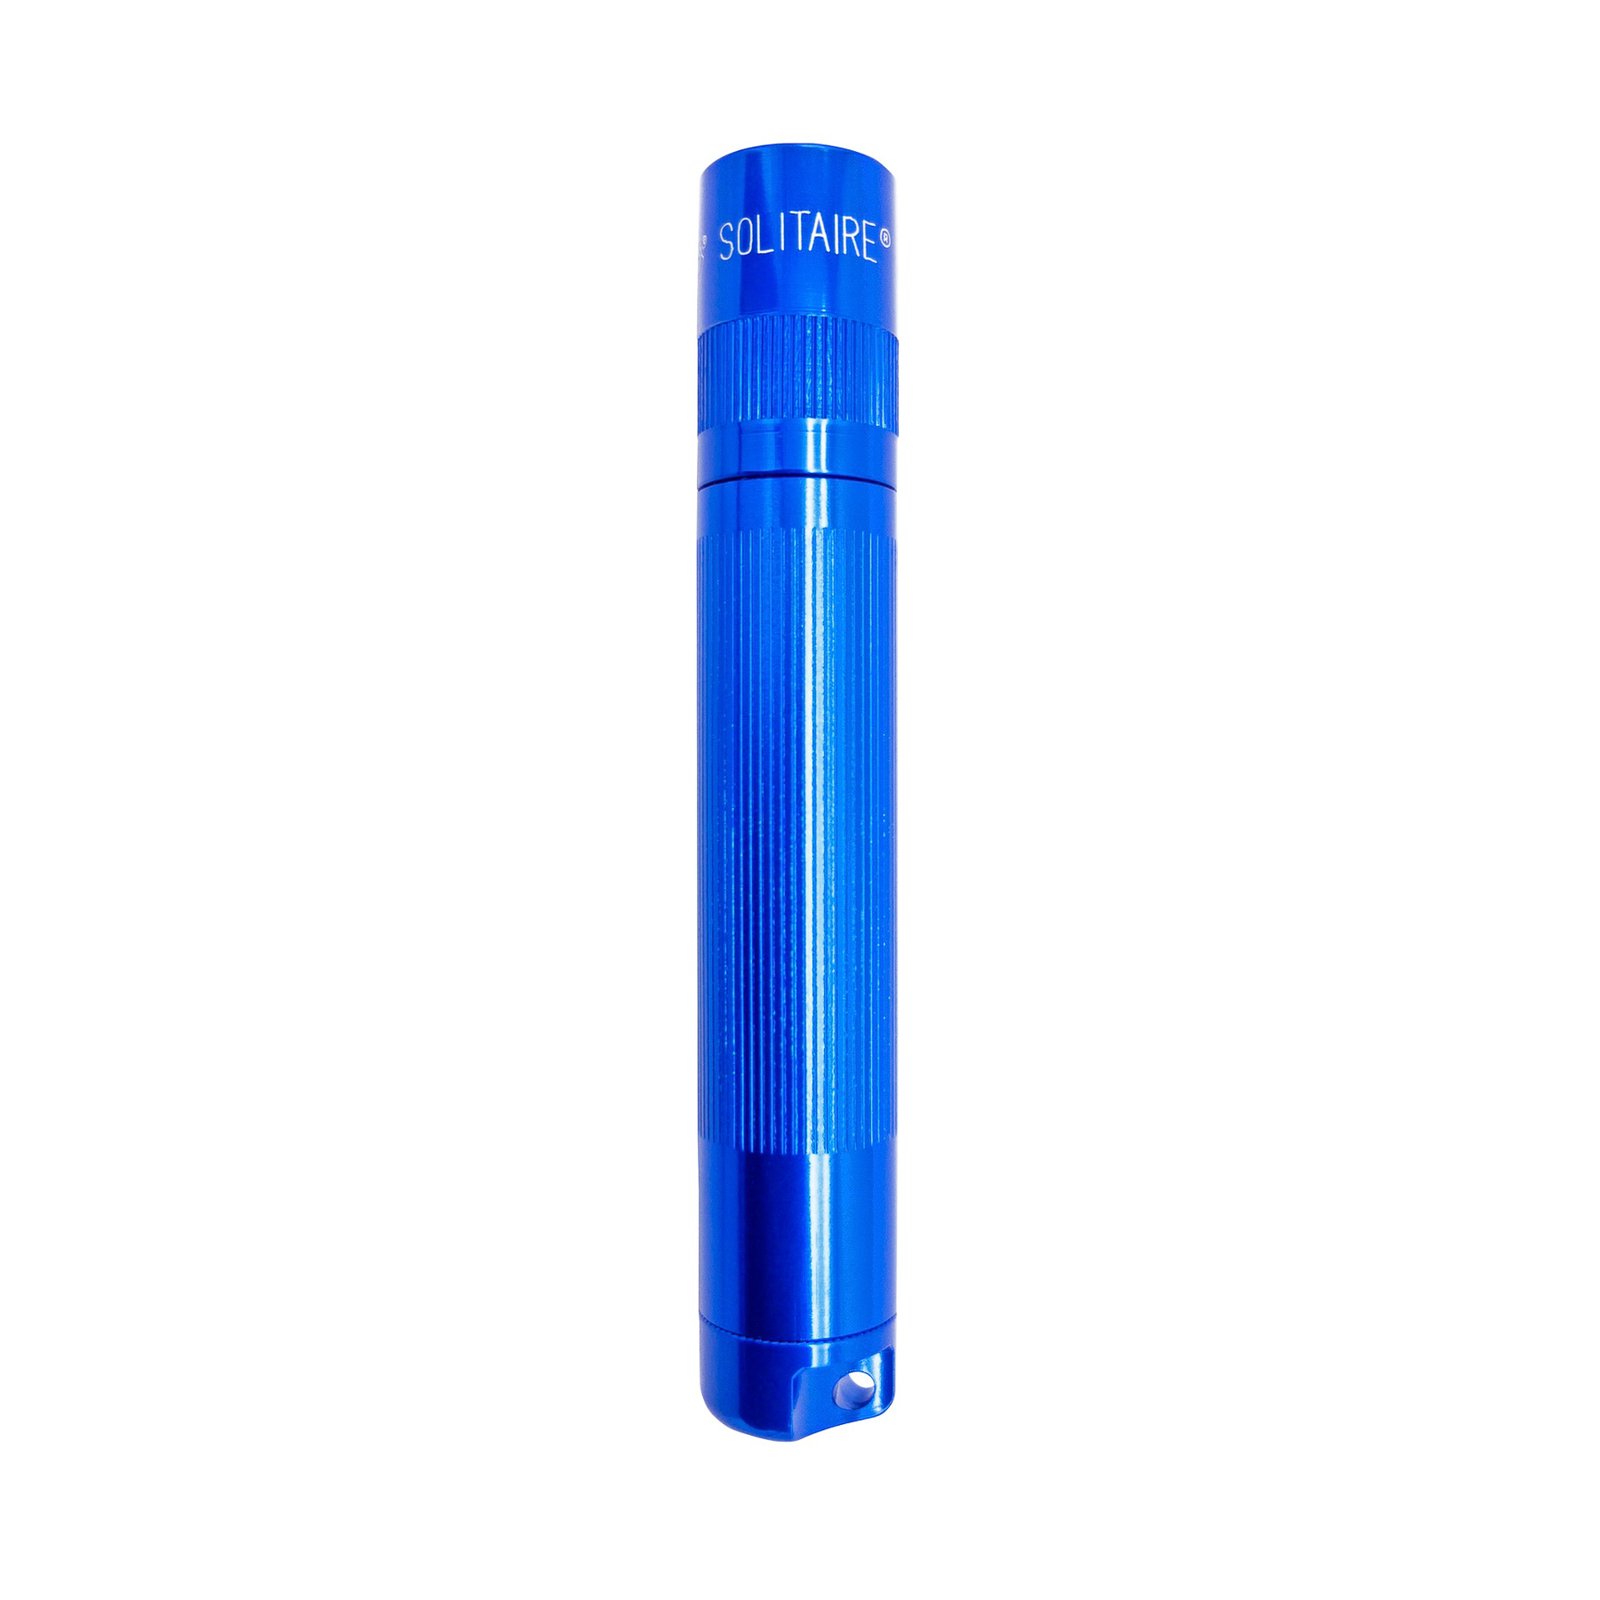 Maglite Xenon taskulamppu Solitaire 1-Cell AAA, laatikko, sininen